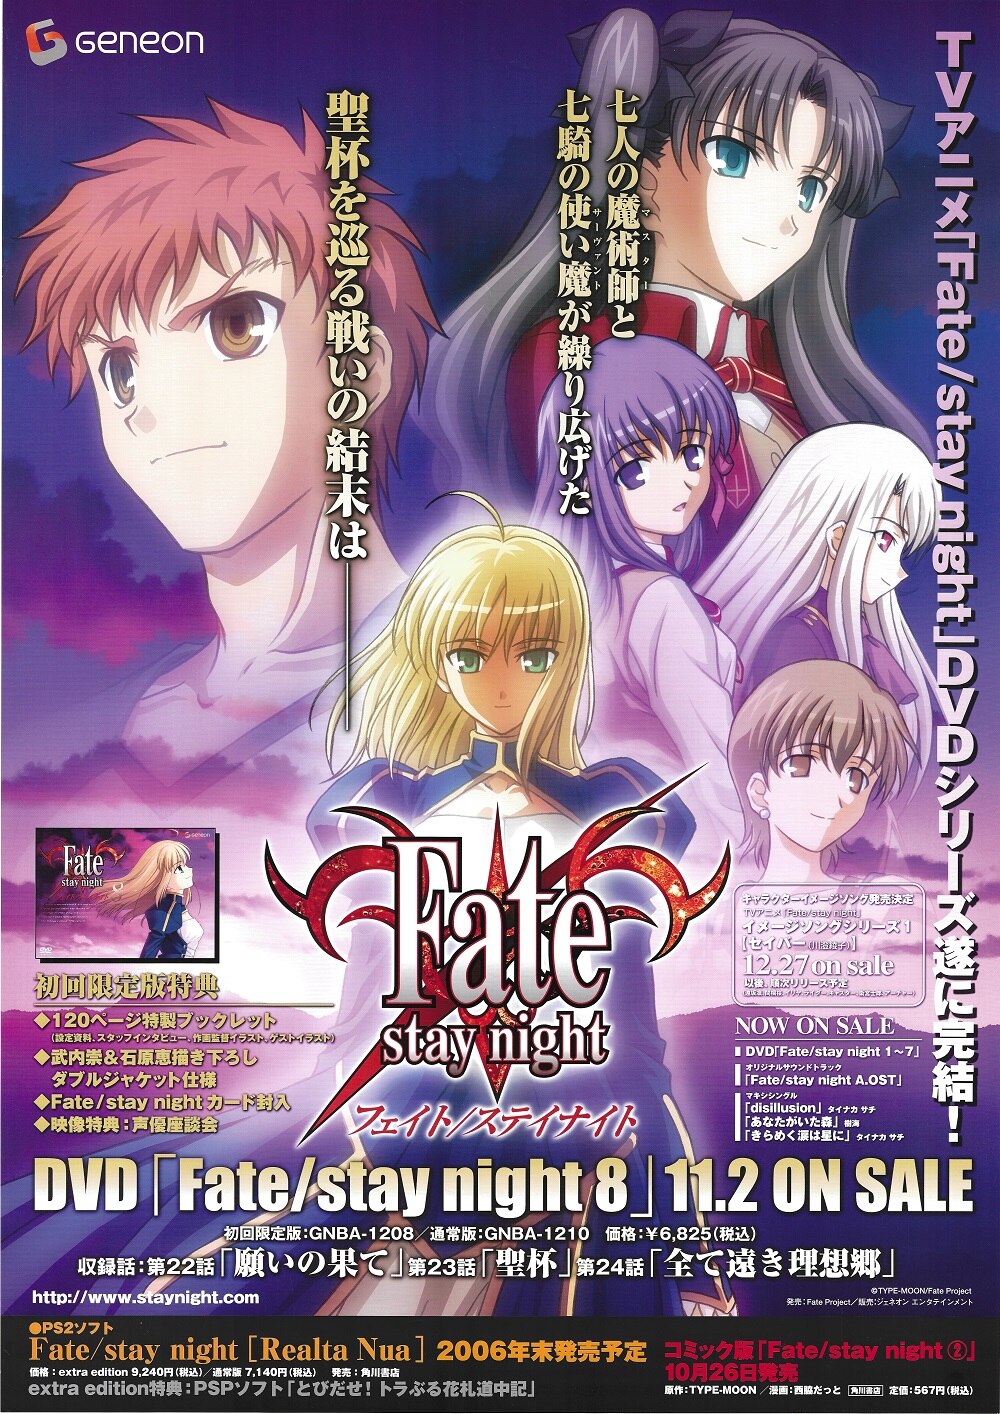 スタジオディーン 販促用 Fate/stay night(スタジオディーン版/DVD8巻) B2ポスター | まんだらけ Mandarake